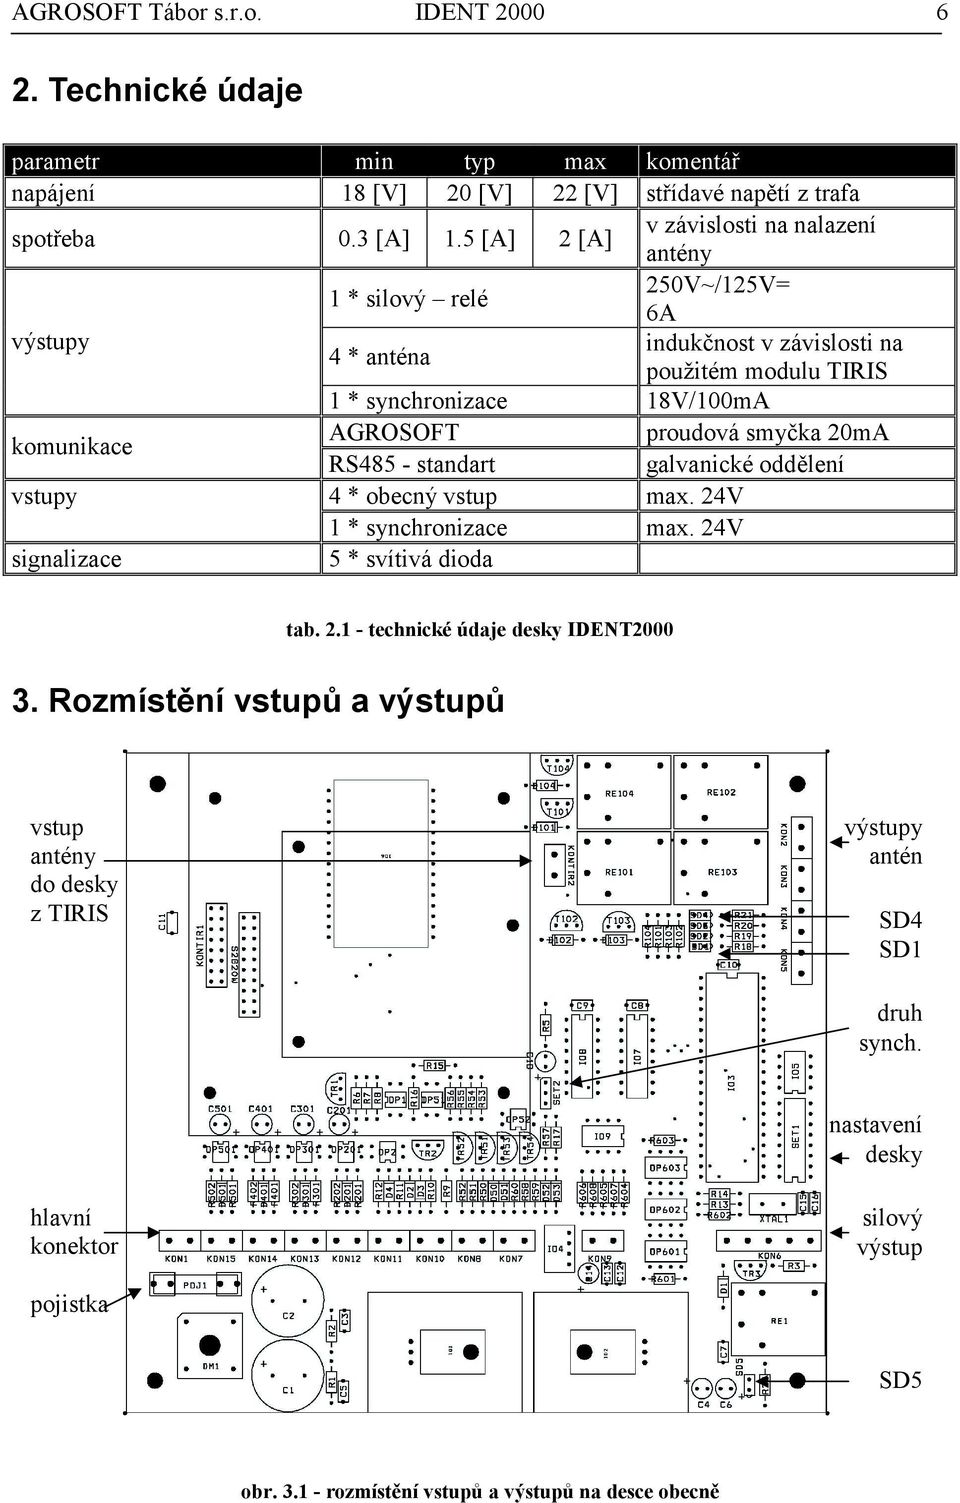 AGROSOFT proudová smyčka 20mA RS485 - standart galvanické oddělení vstupy 4 * obecný vstup max. 24V 1 * synchronizace max. 24V signalizace 5 * svítivá dioda tab. 2.1 - technické údaje desky IDENT2000 3.